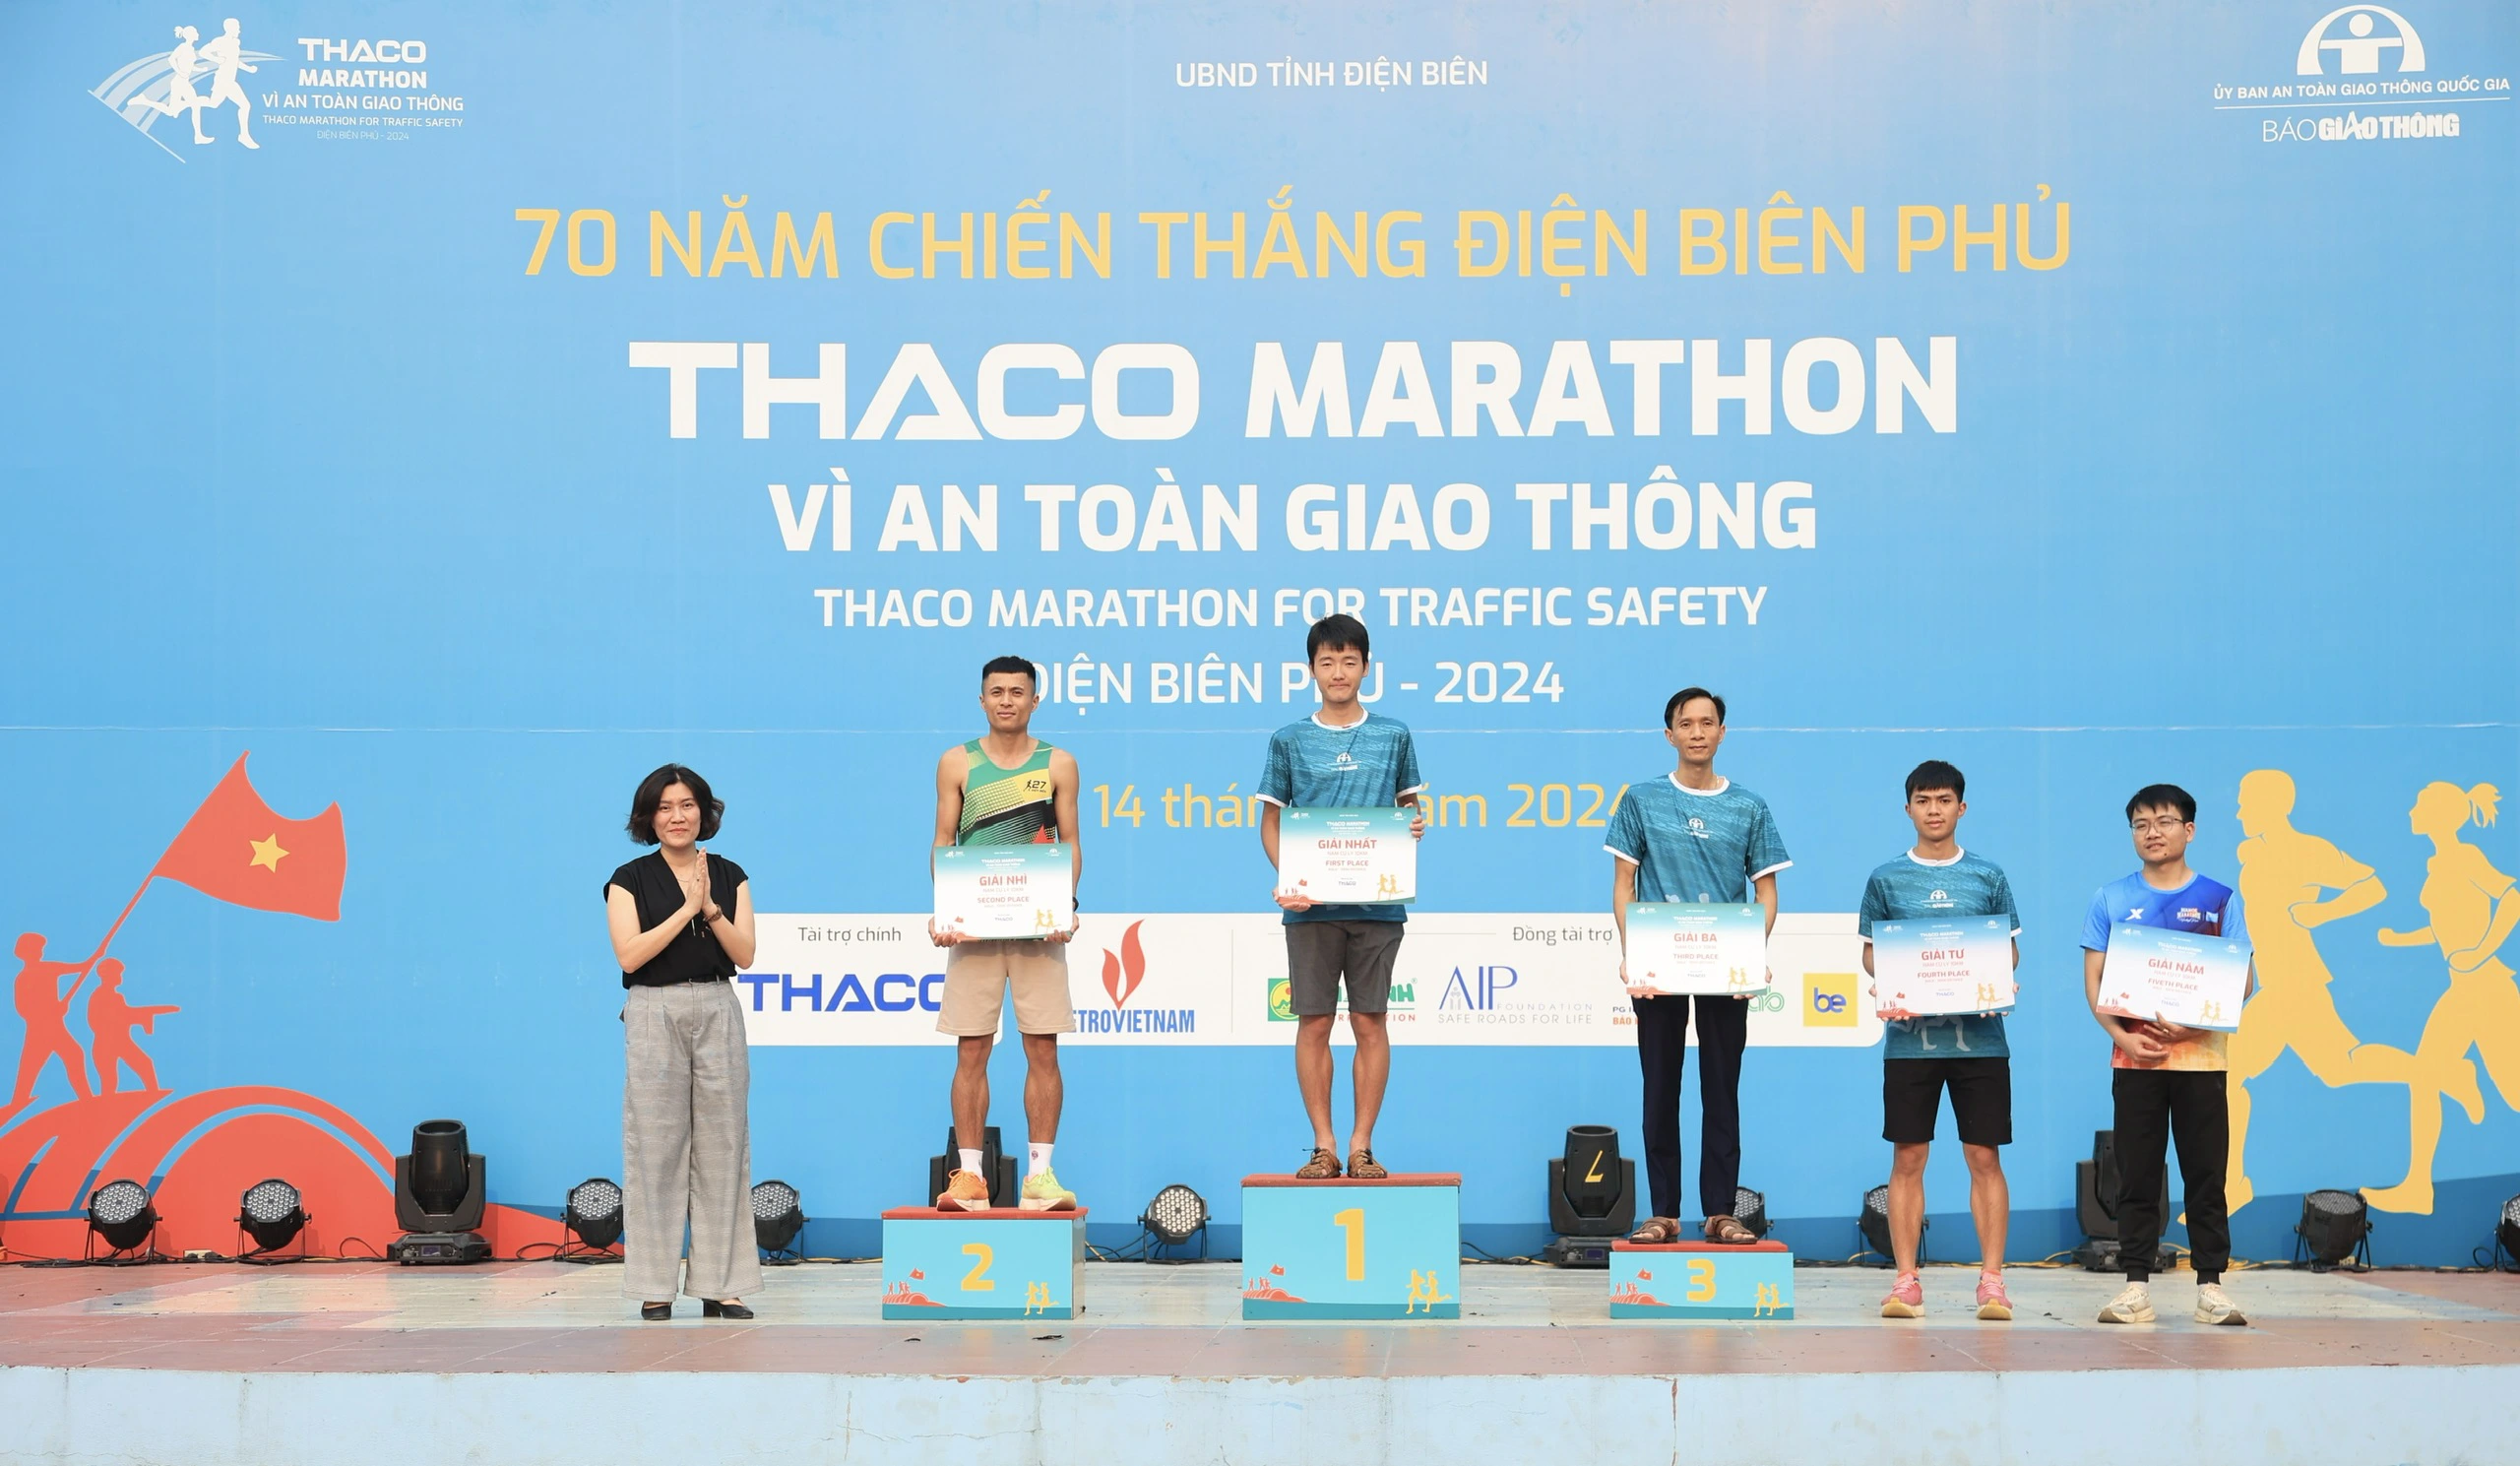 Trực tiếp: Giải THACO Marathon vì ATGT - Điện Biên Phủ 2024 thành công rực rỡ- Ảnh 9.